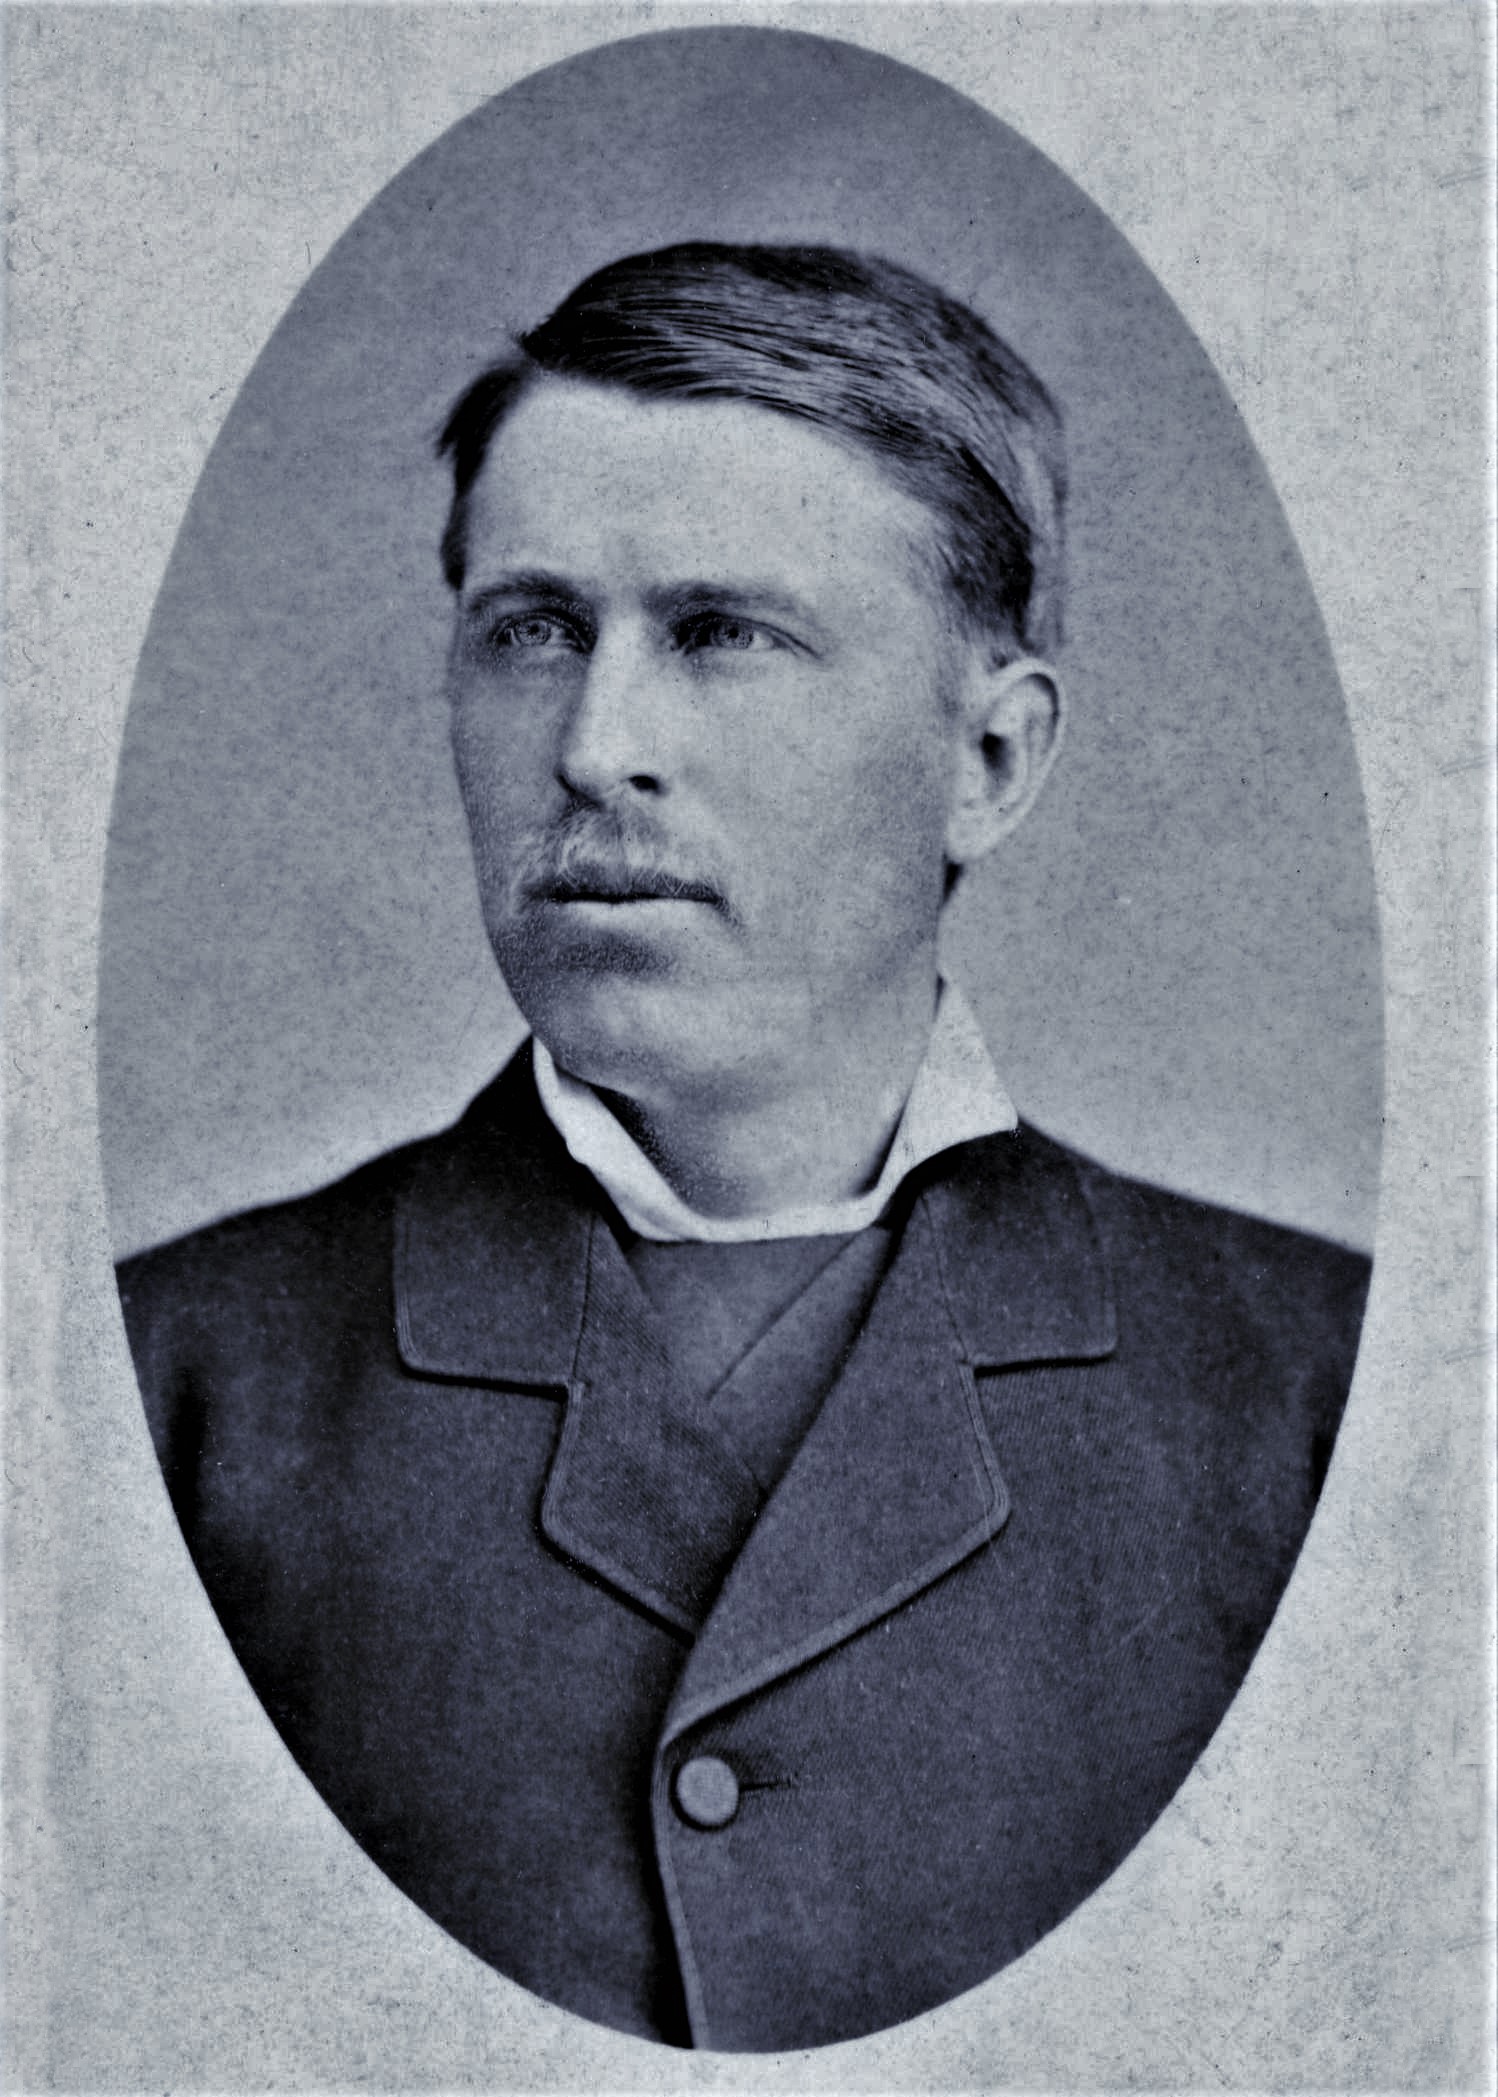 James Henry Brown Jr. (1855 - 1886)